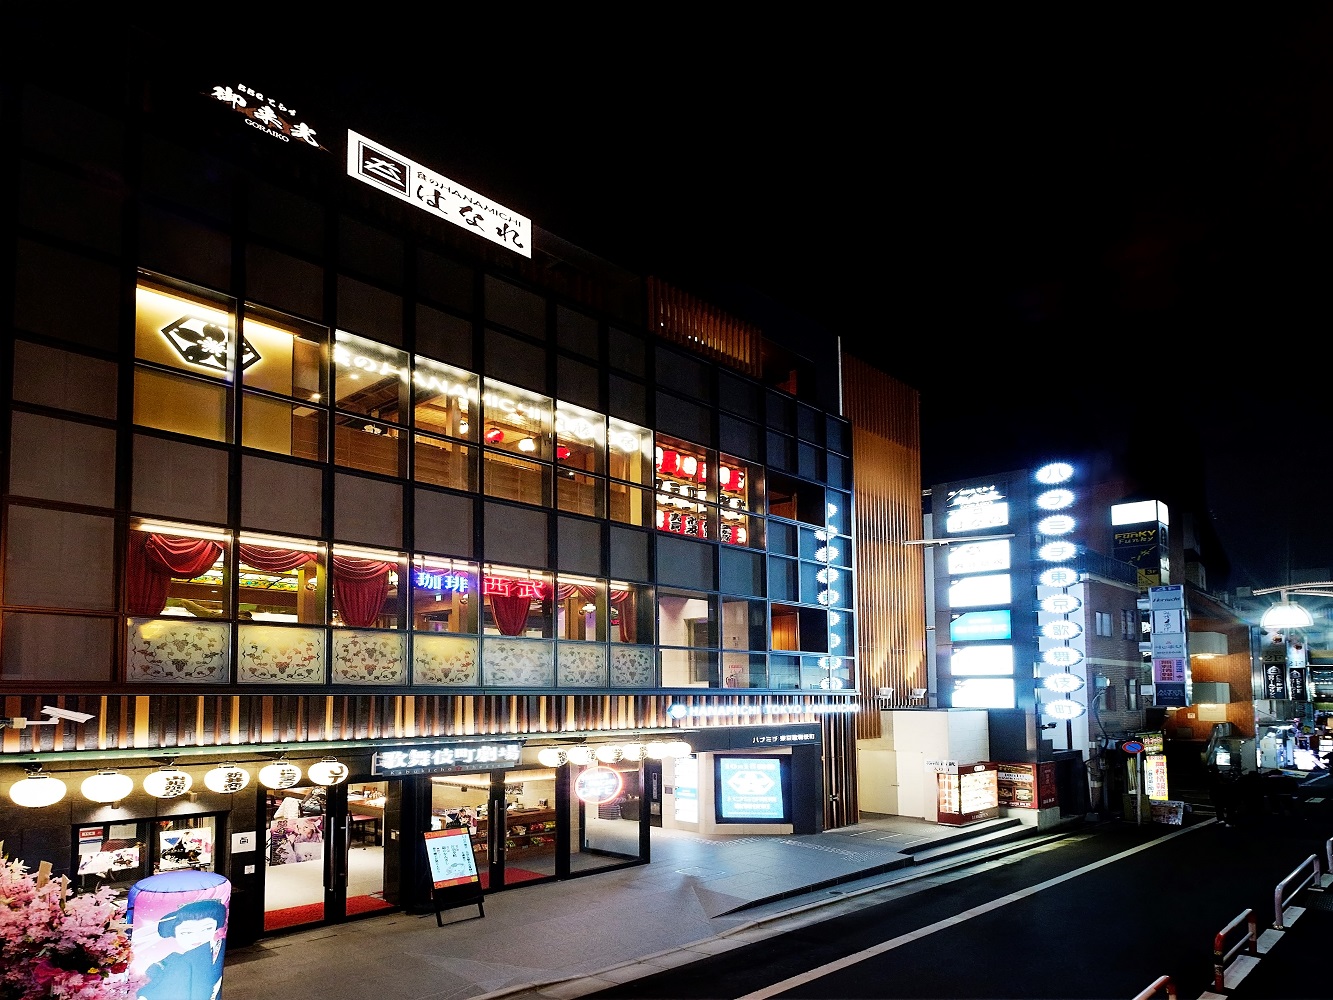 歌舞伎町劇場での大衆演劇の鑑賞（１９６４年創業の純喫茶「珈琲西武」の幕の内弁当付き）